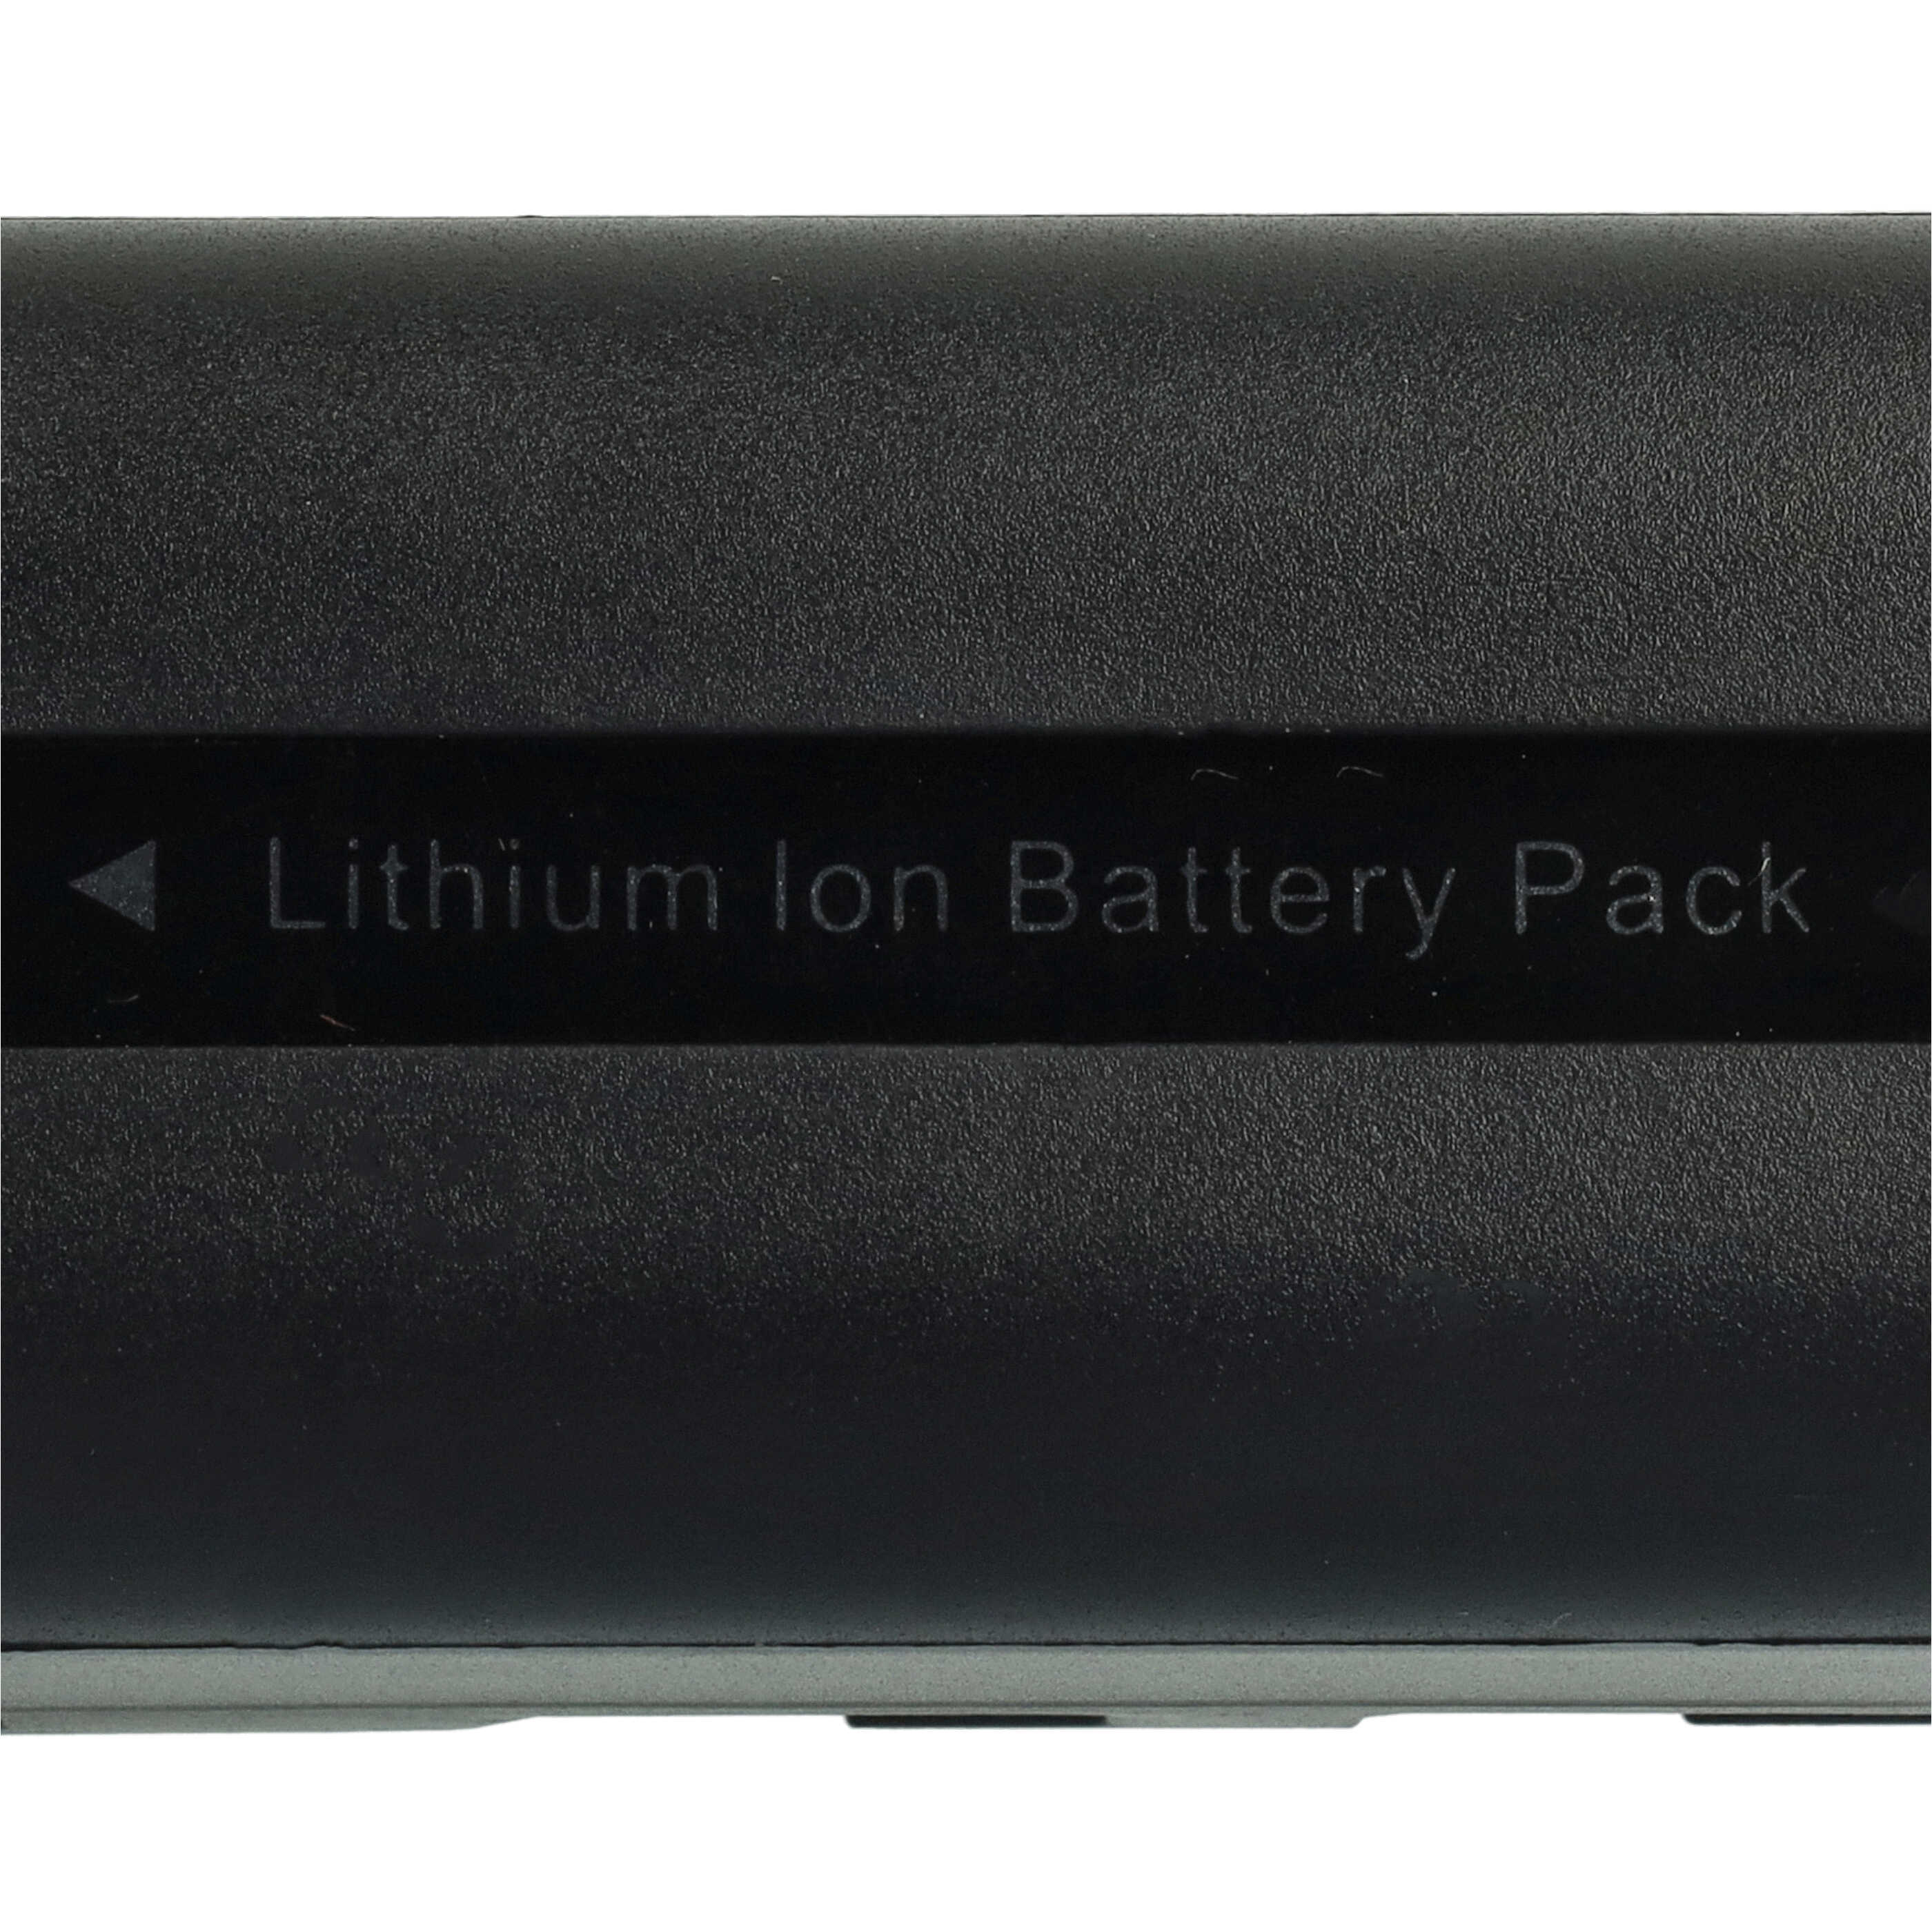 Akumulator do aparatu cyfrowego zamiennik Samsung SB-LSM80, SB-LSM320, SB-LSM160 - 1640 mAh 7,2 V Li-Ion